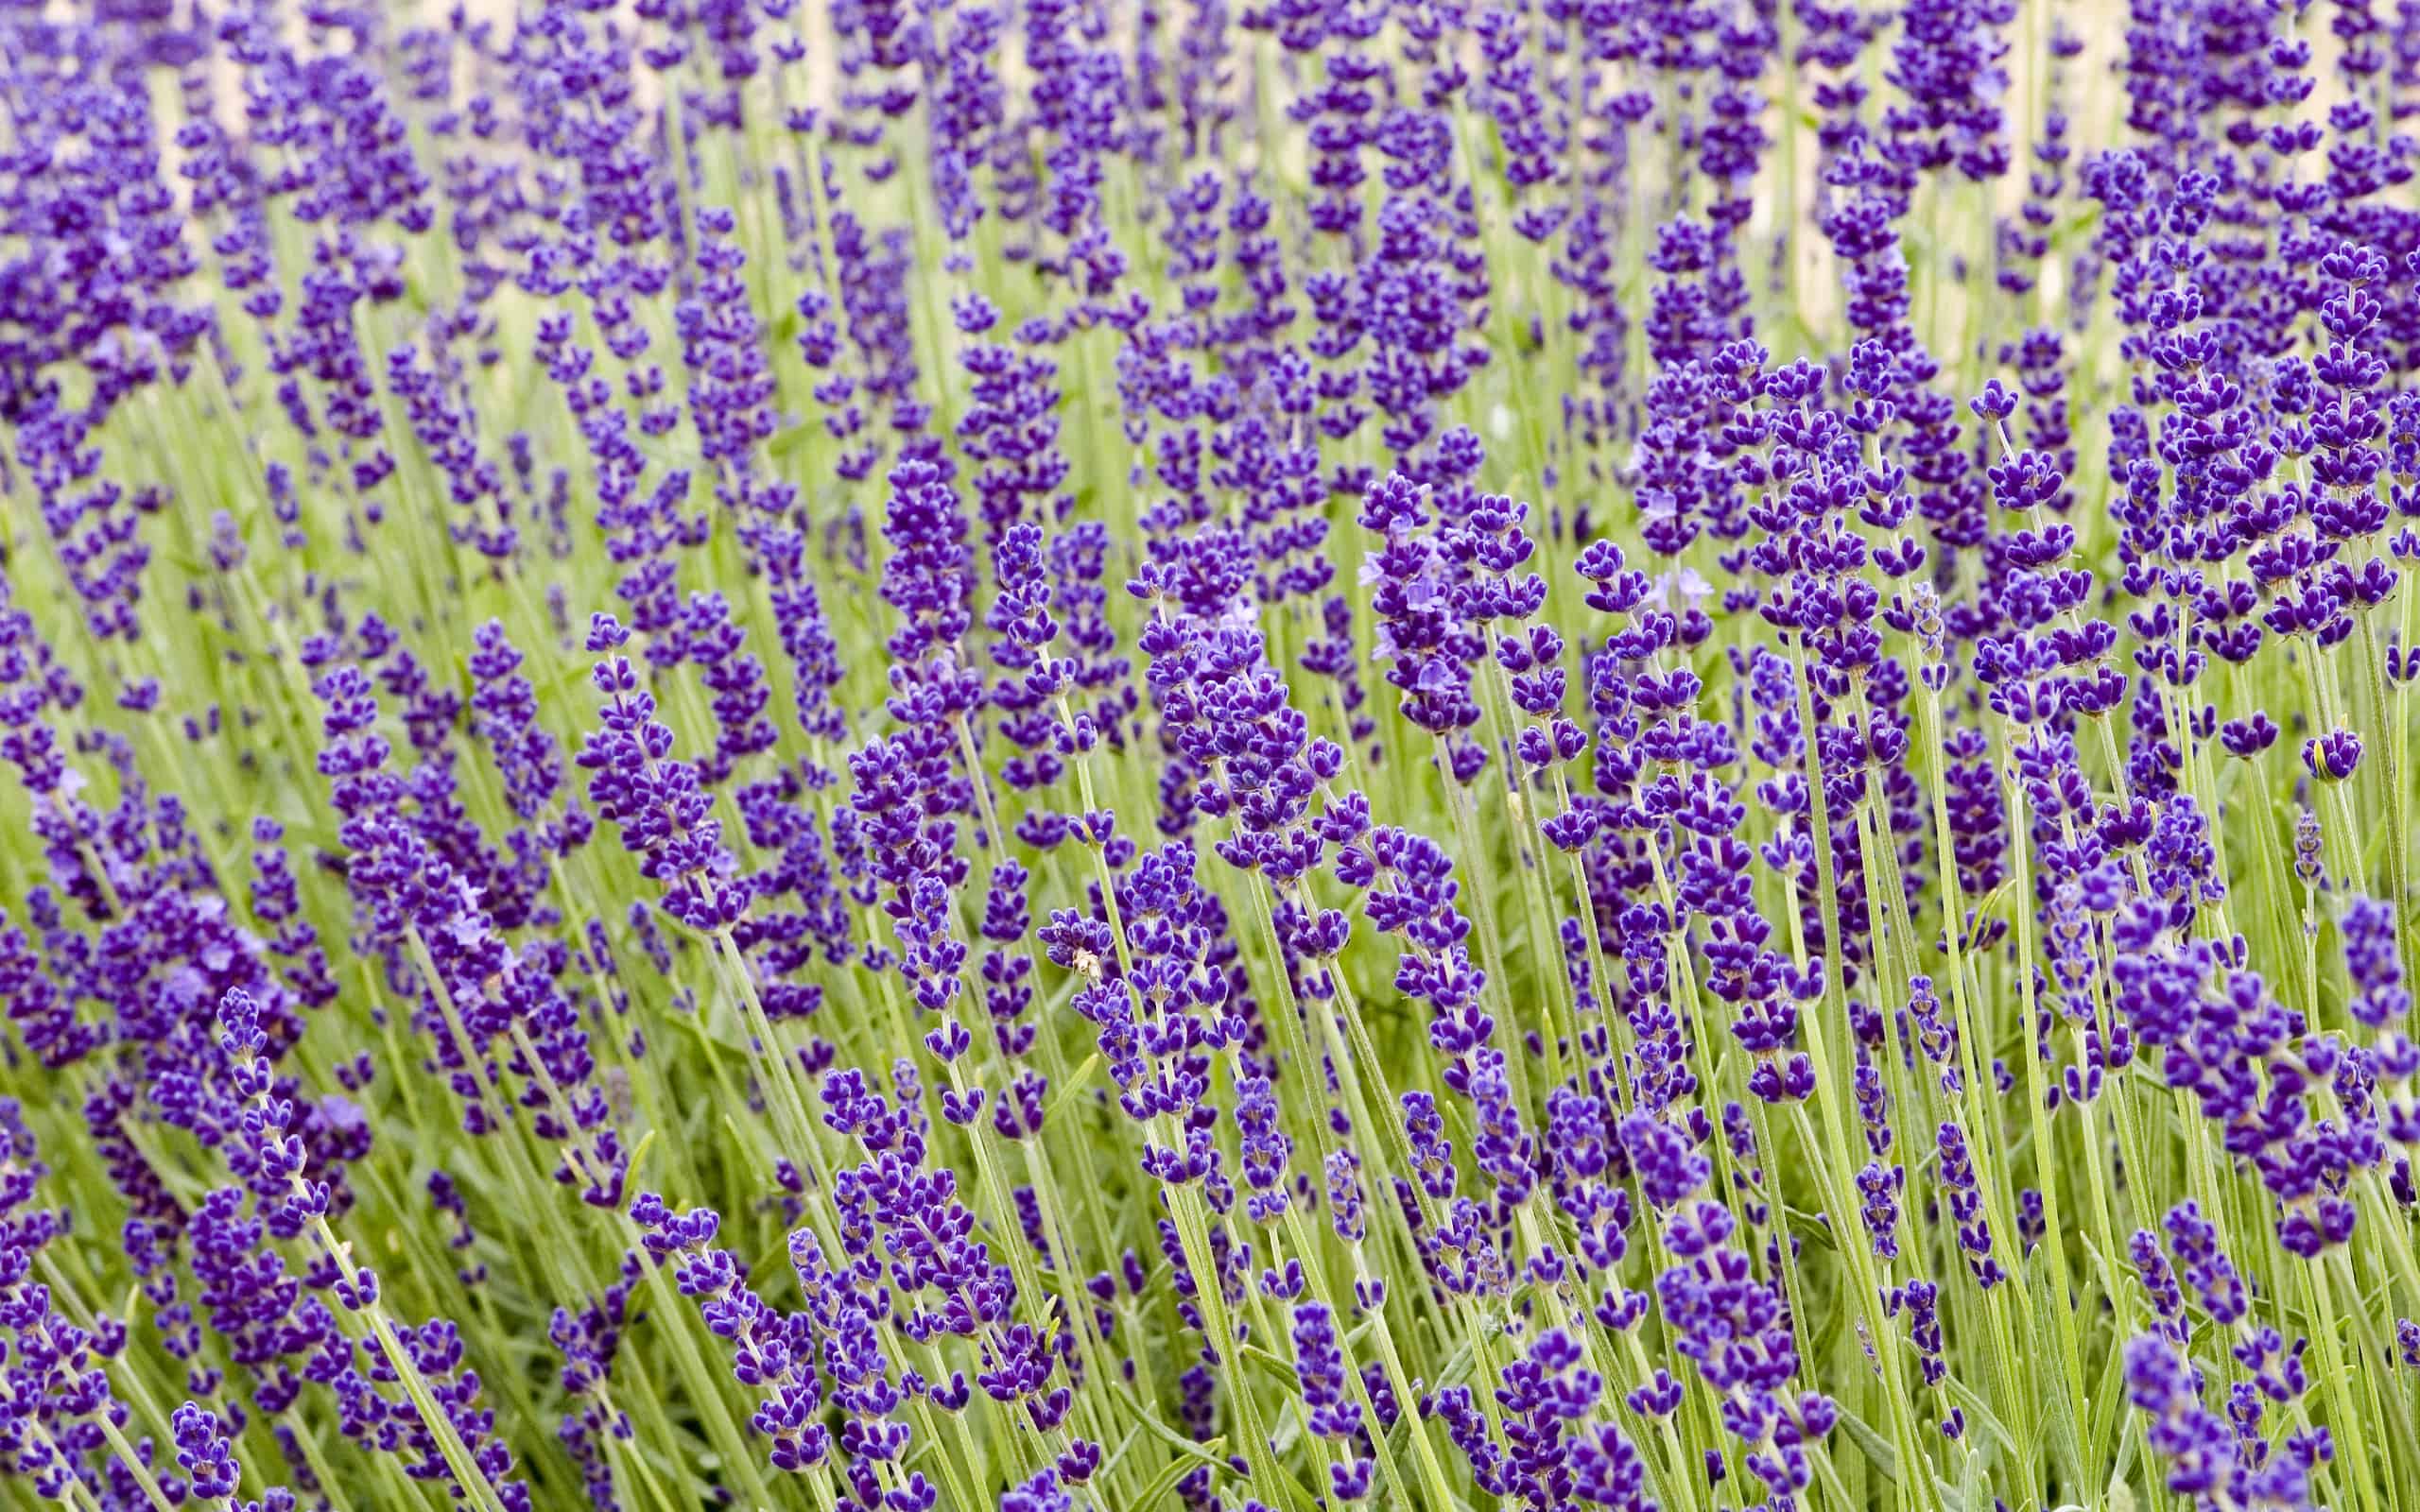 'Hidcote' lavender field